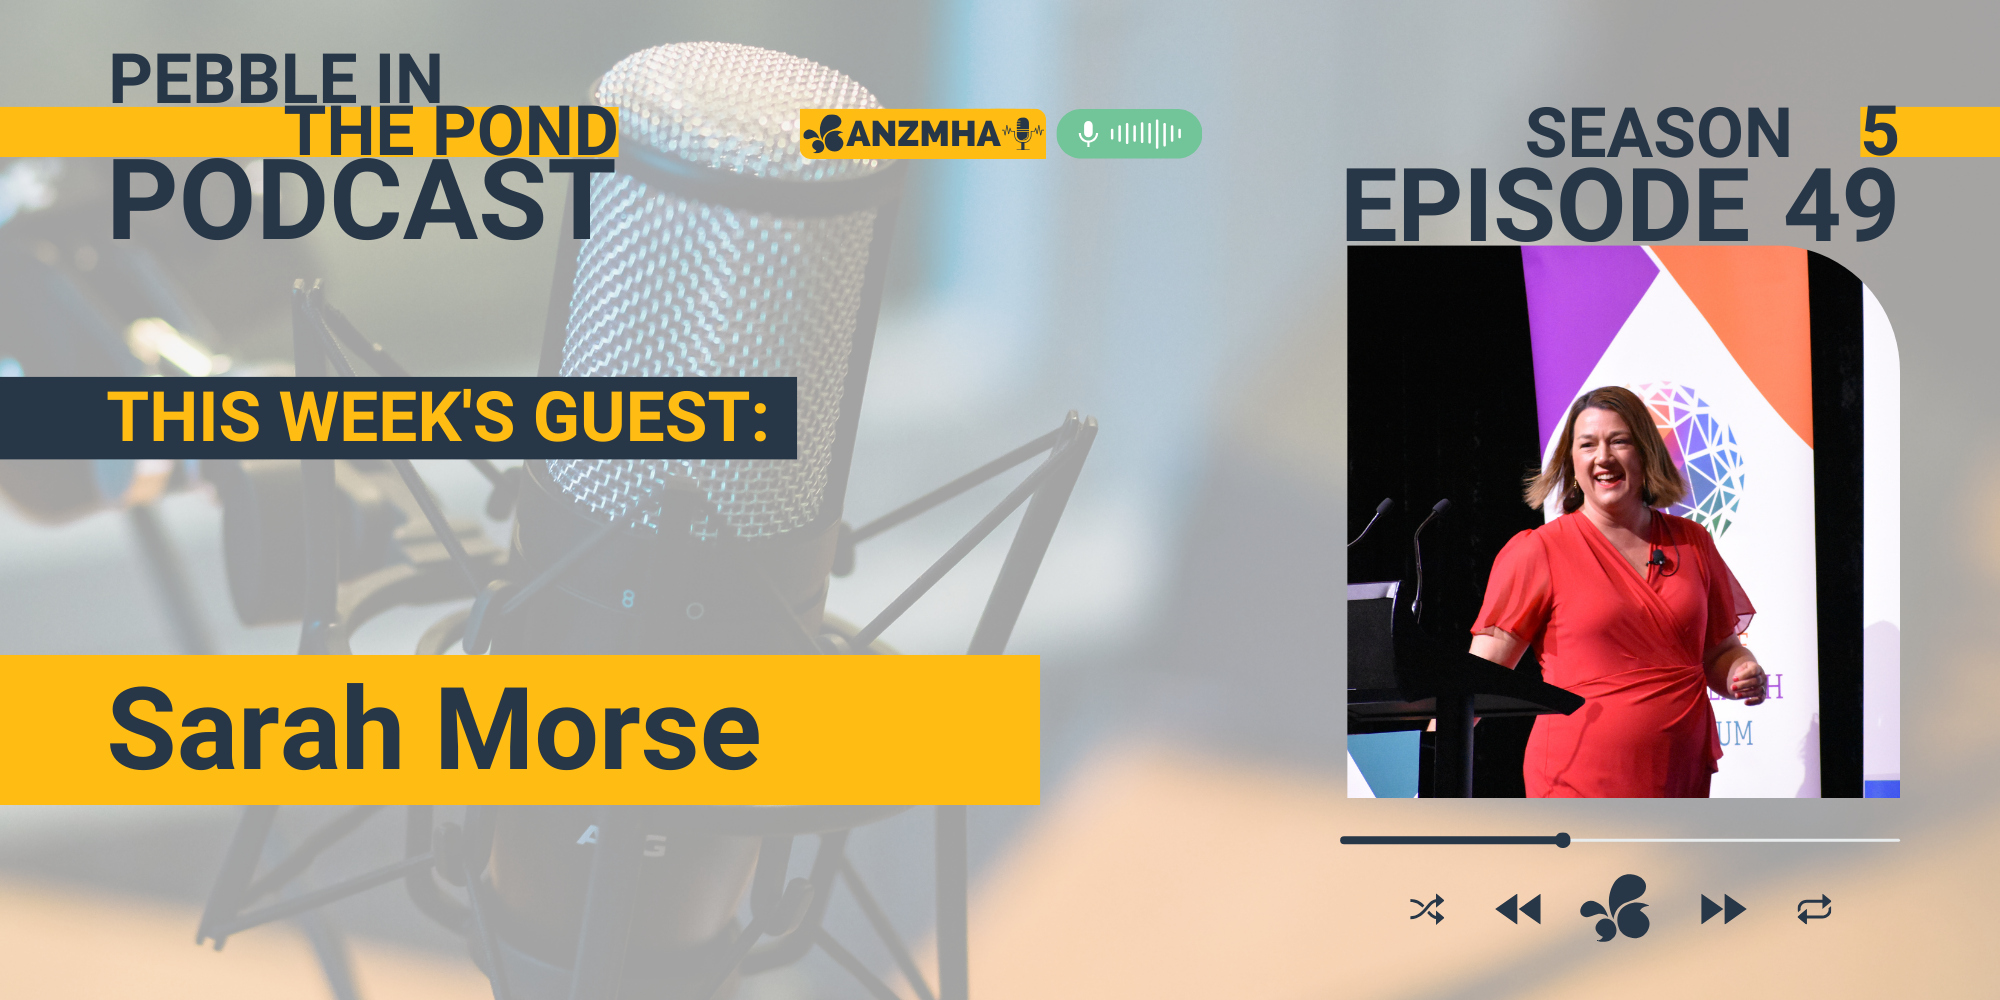 ANZMHA Podcast: Sarah Morse